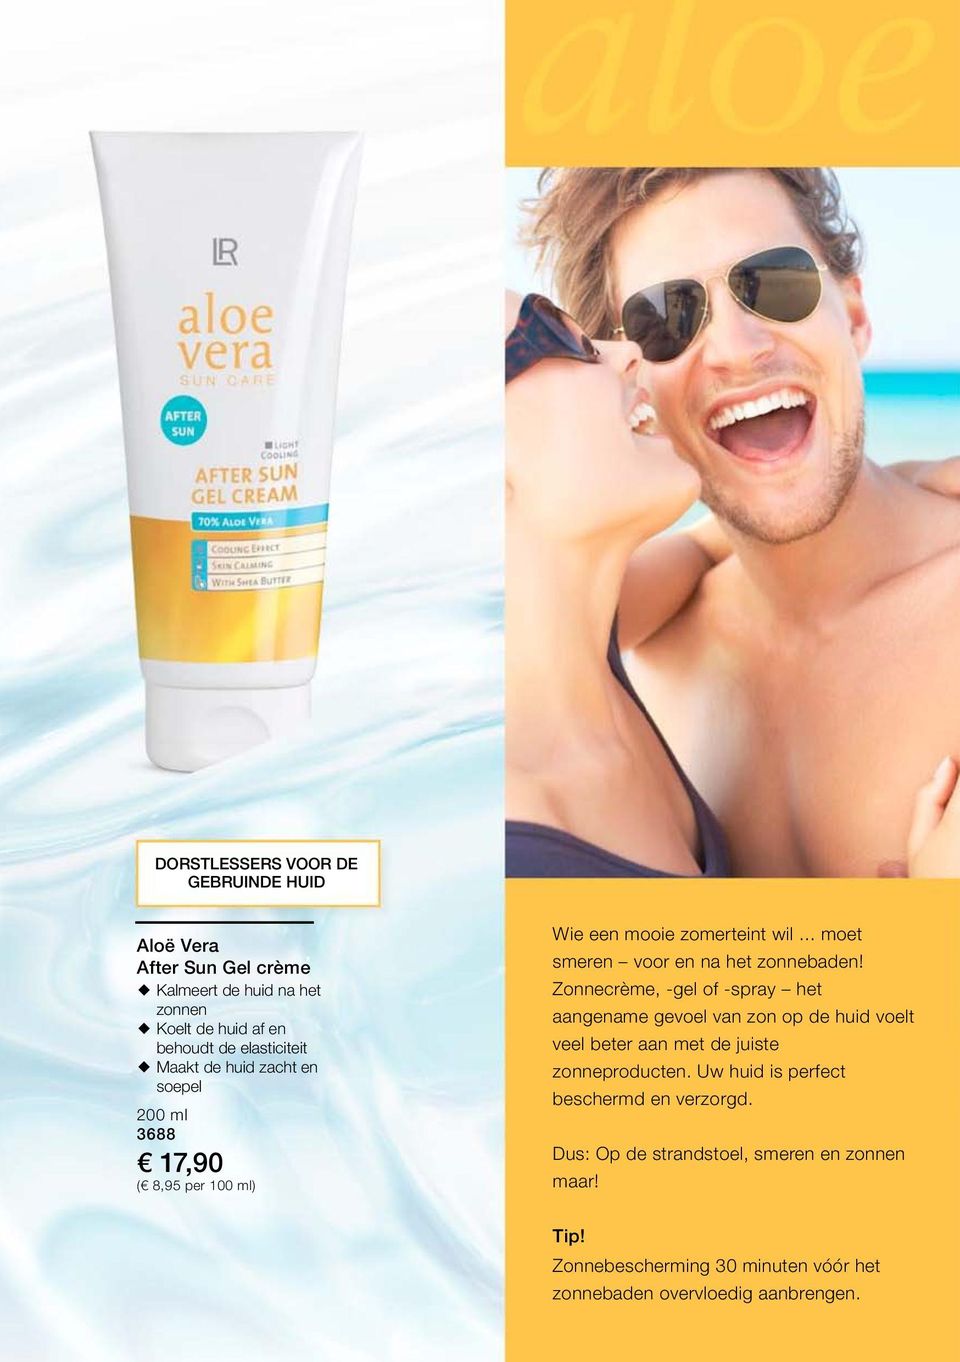 Zonnecrème, -gel of -spray het aangename gevoel van zon op de huid voelt veel beter aan met de juiste zonneproducten.